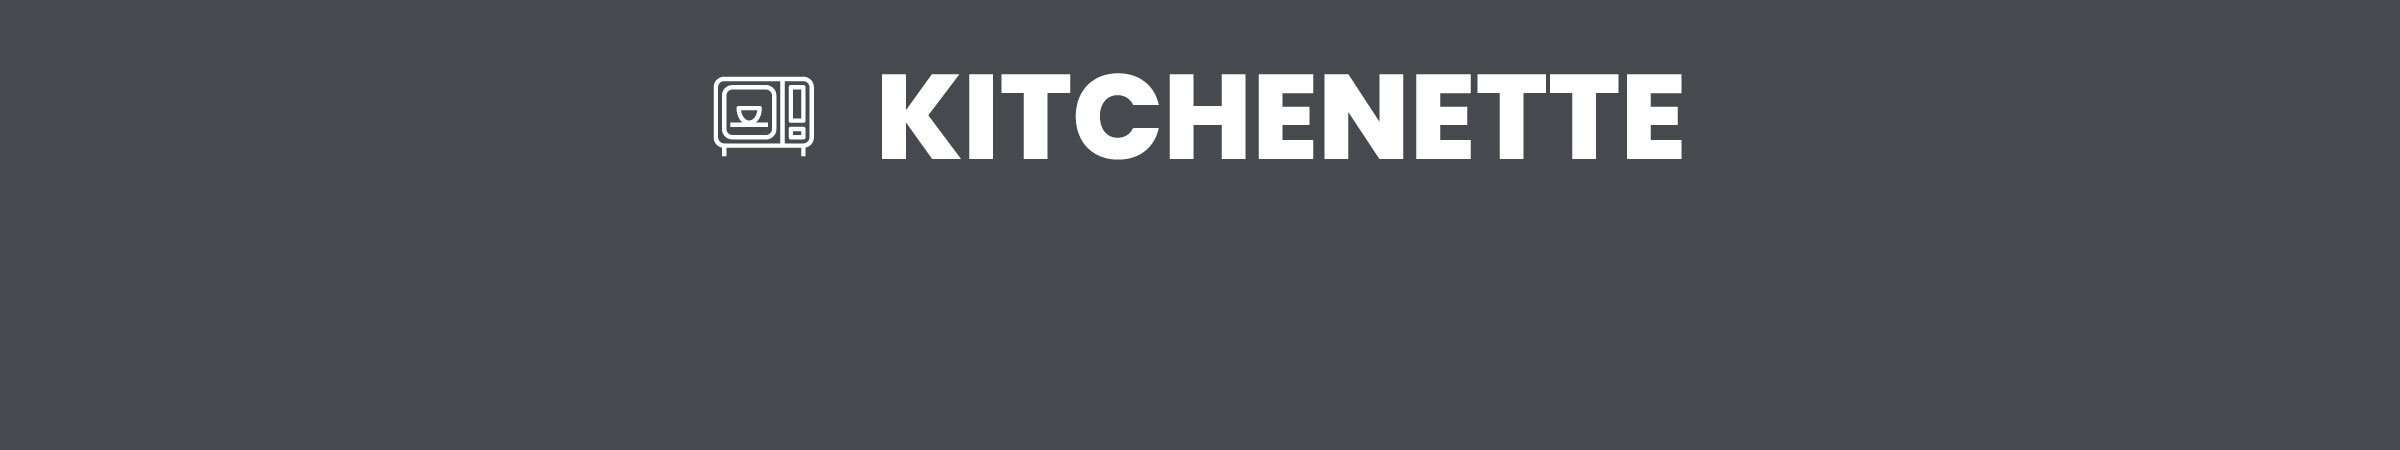 2-Kitchenette.jpg